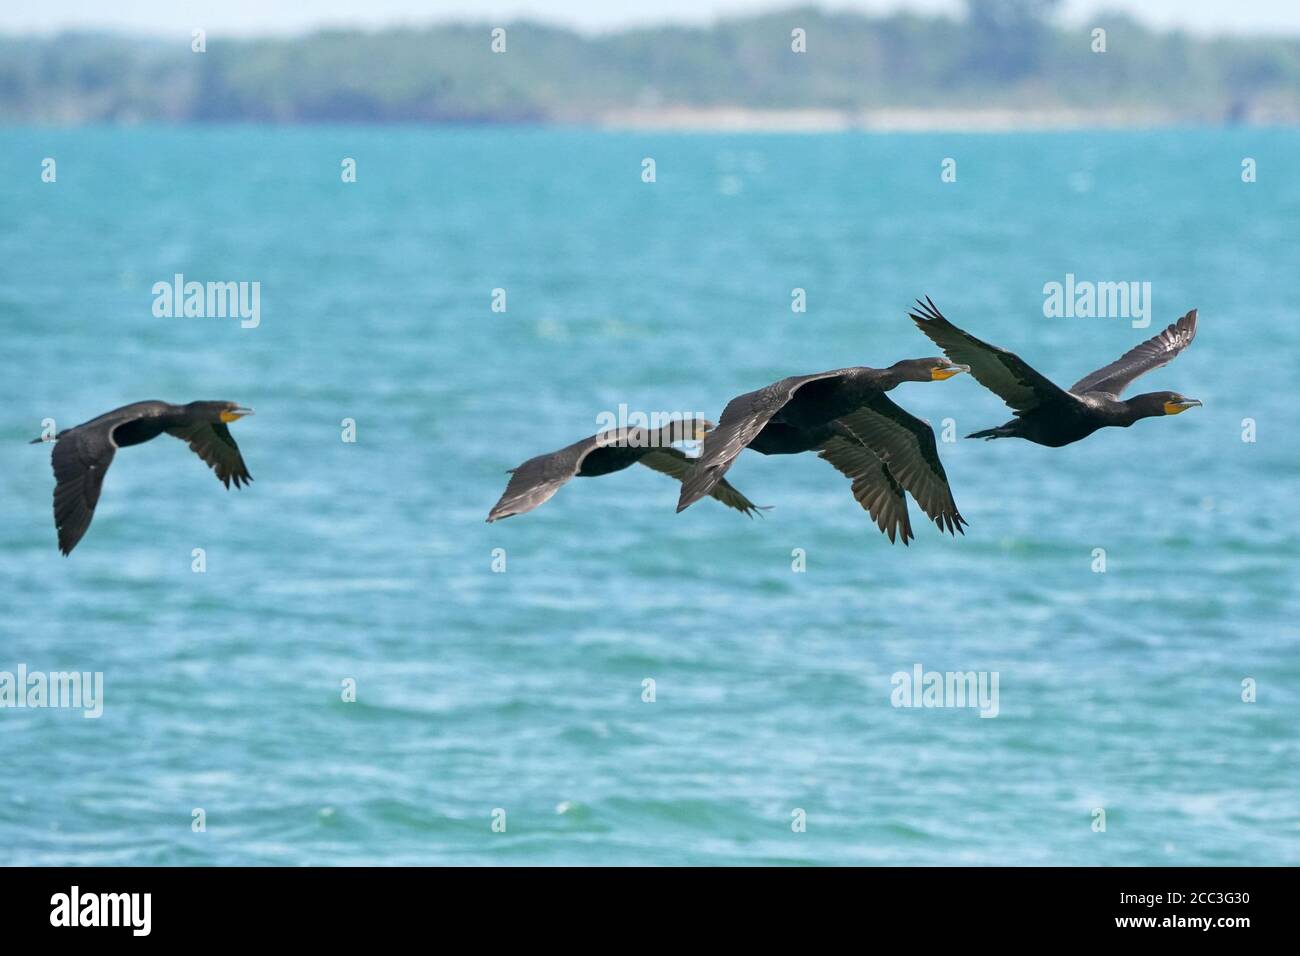 Cormorants in flight over water Stock Photo